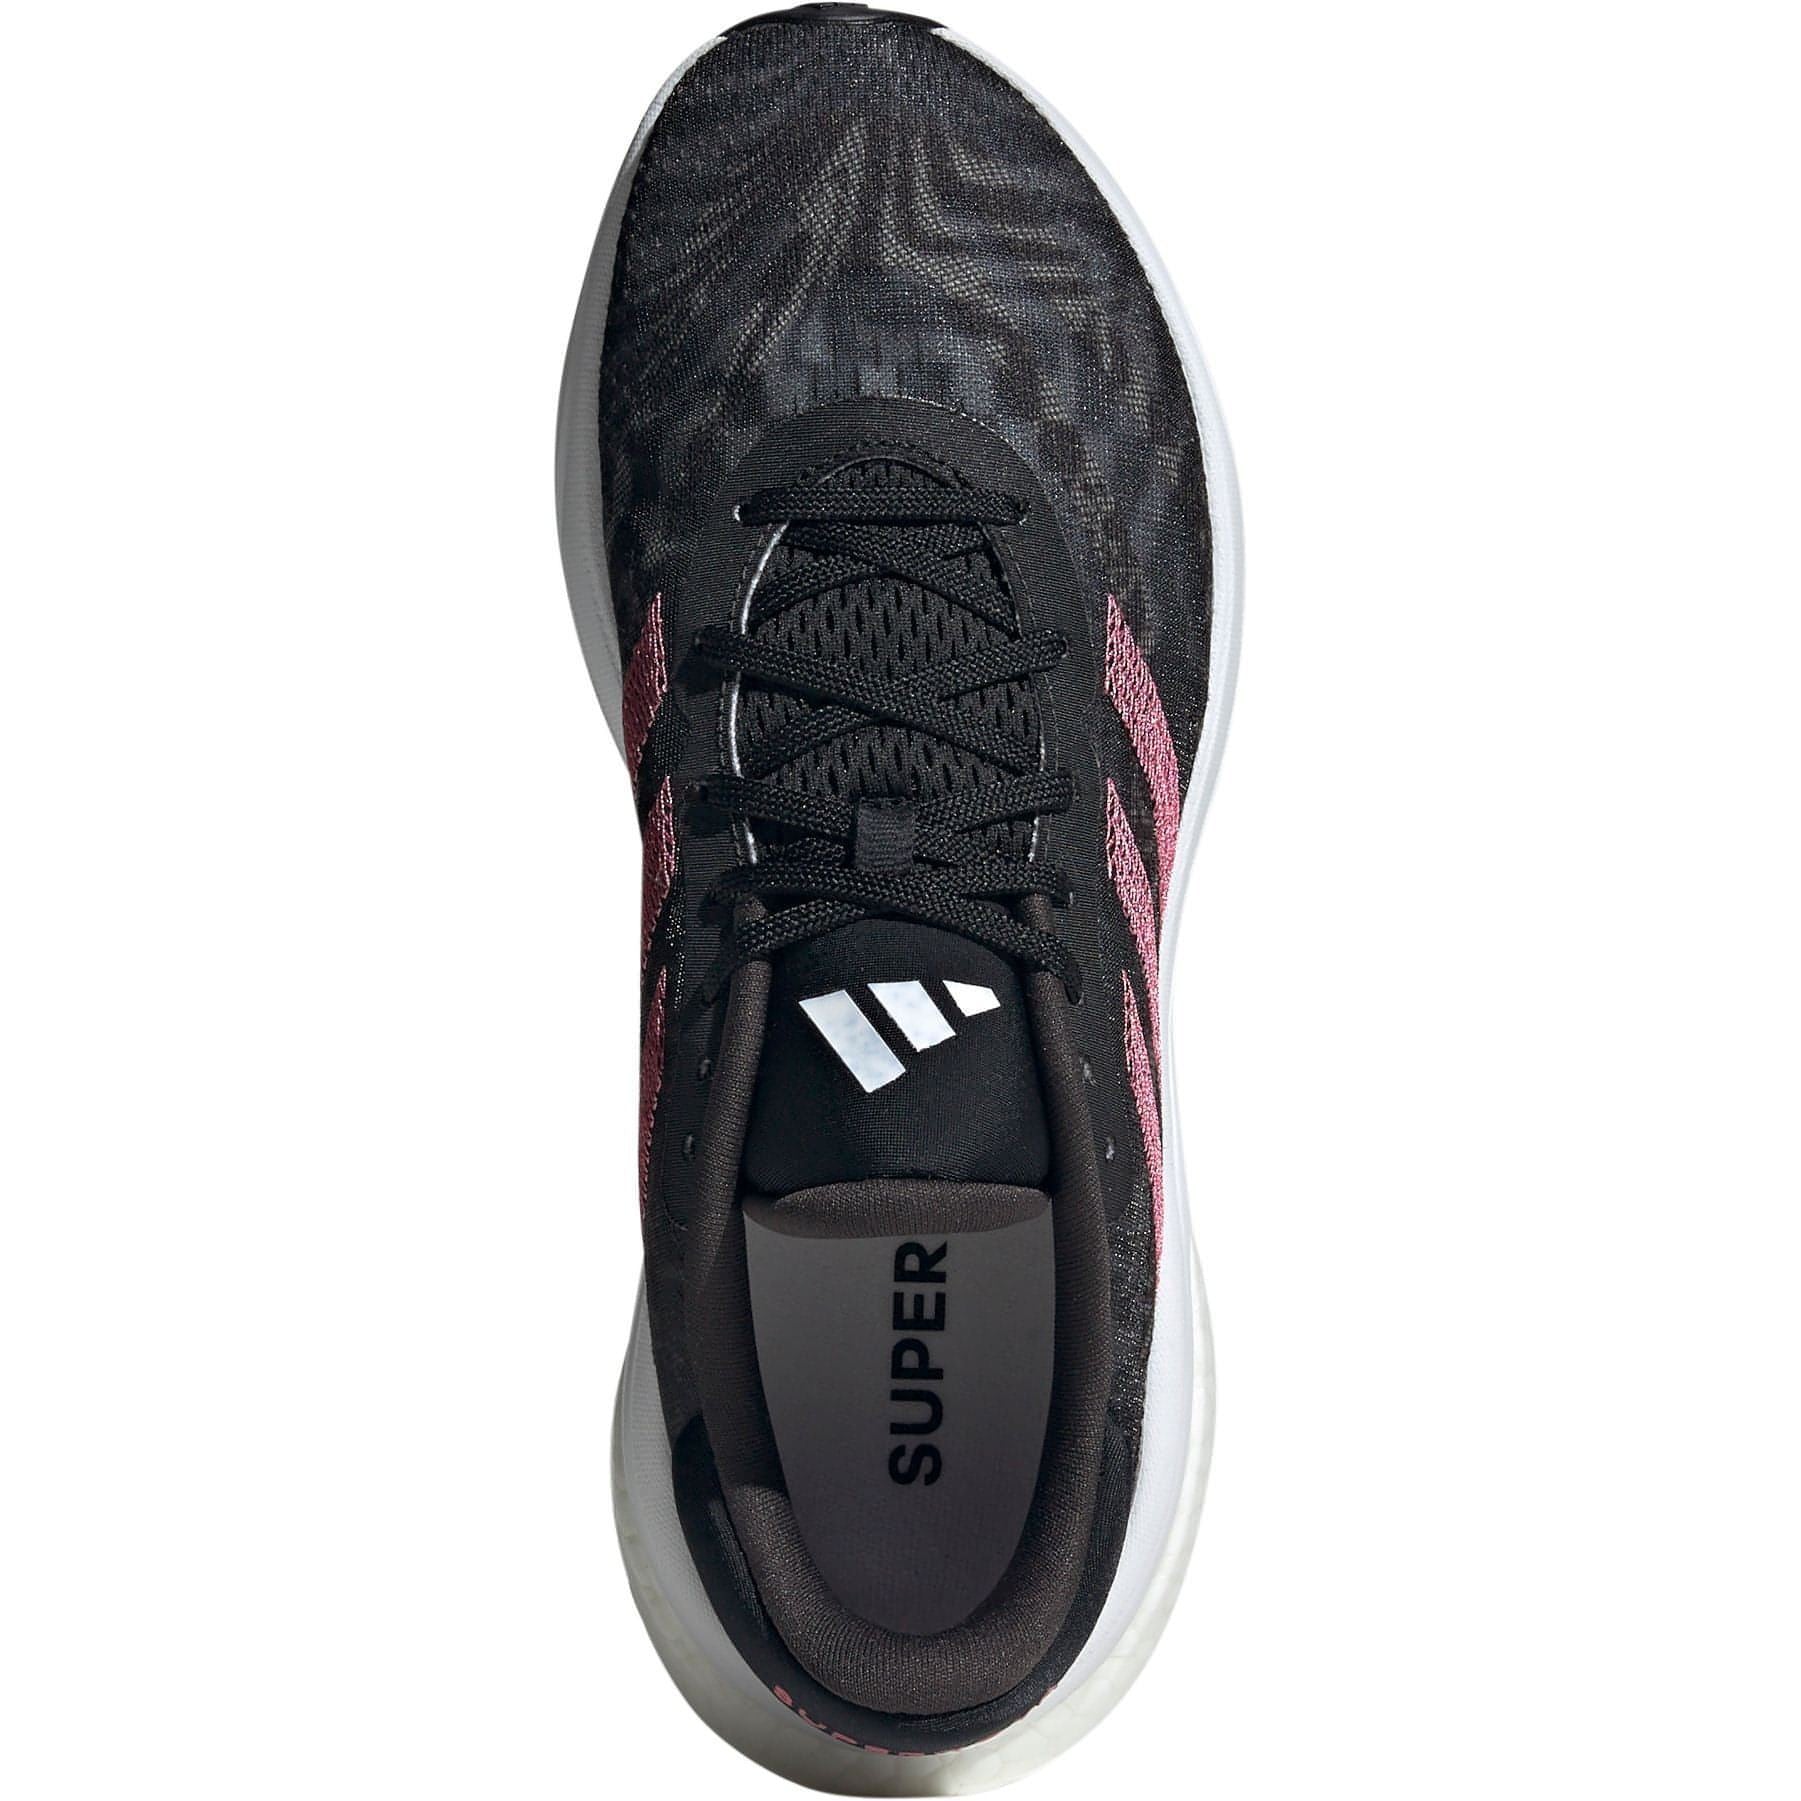 Adidas Supernova Shoes Ie4351 Top